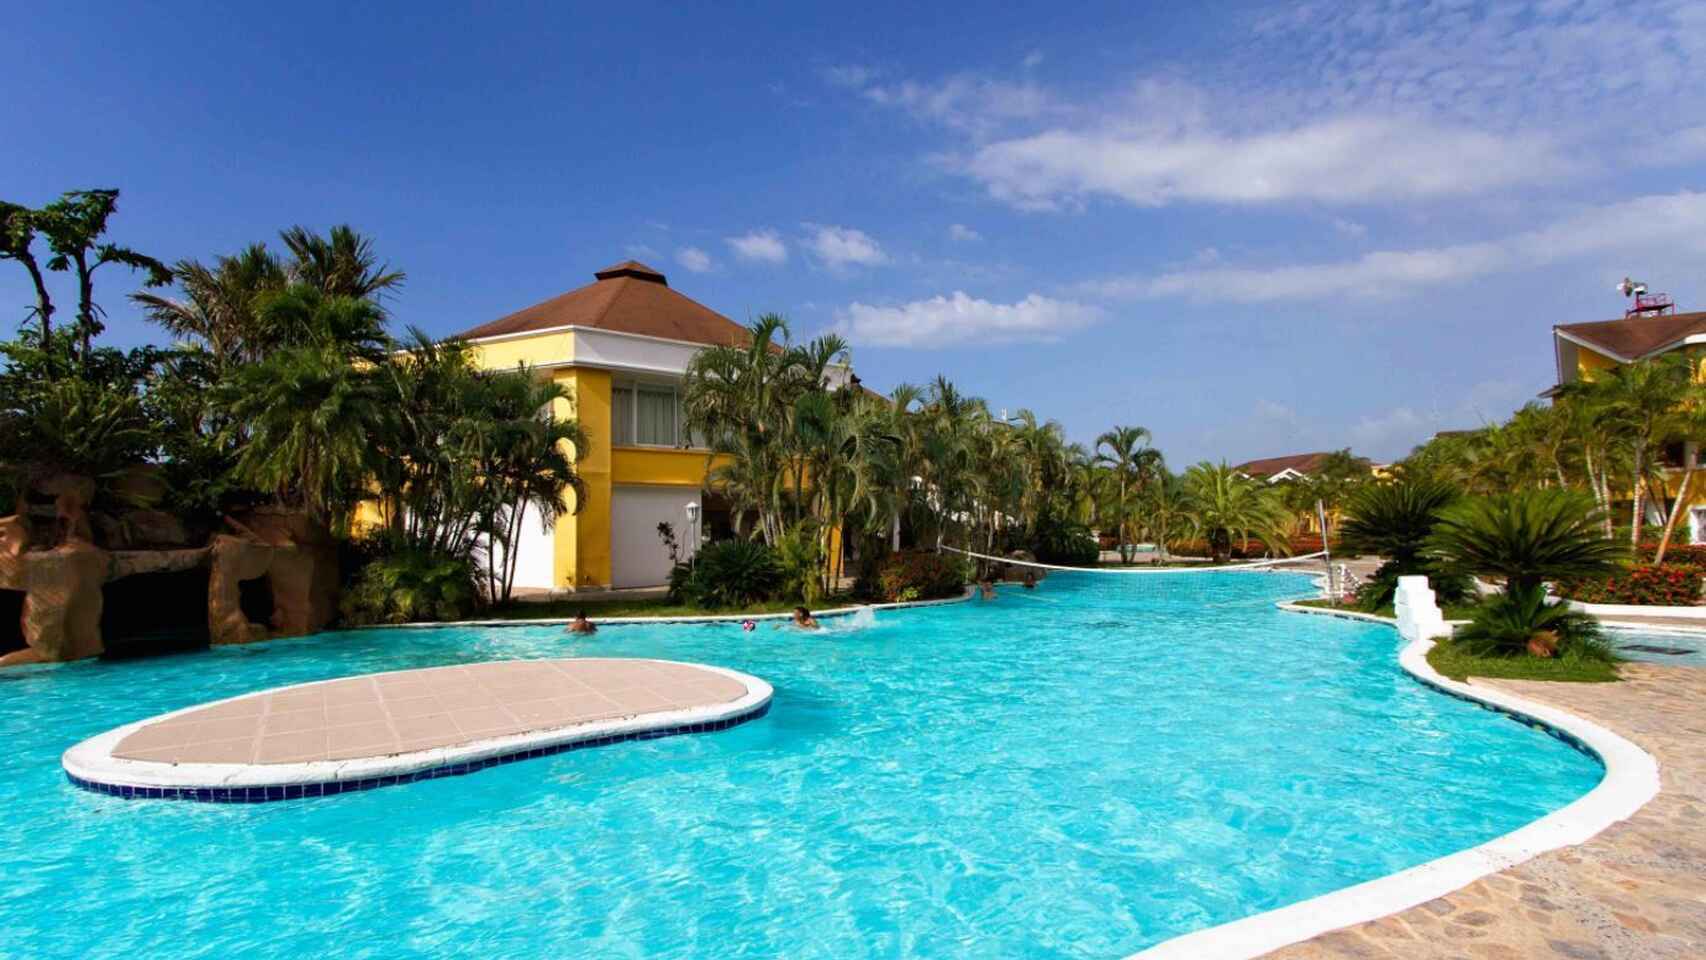 La piscina privada del hotel en el que se hospeda Álvarez. Además tiene tres bares: un kiosco en la playa, un bar en el jardín y una discoteca.